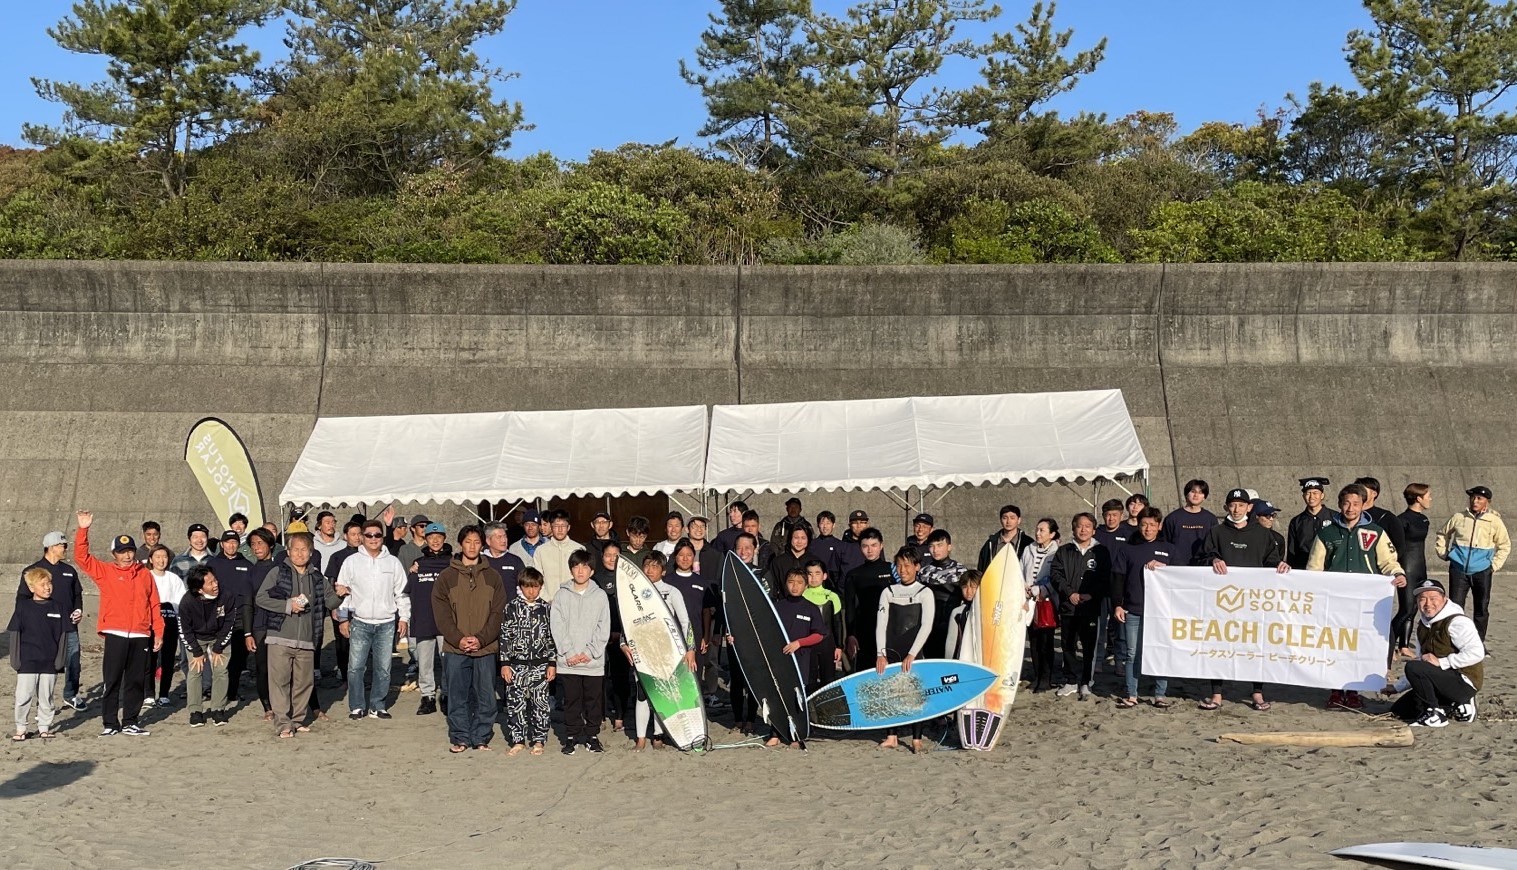 ノータスソーラージャパンが高知県東洋町生見海岸で4月9日に
開催されたサーフィン大会のビーチクリーン活動に協賛